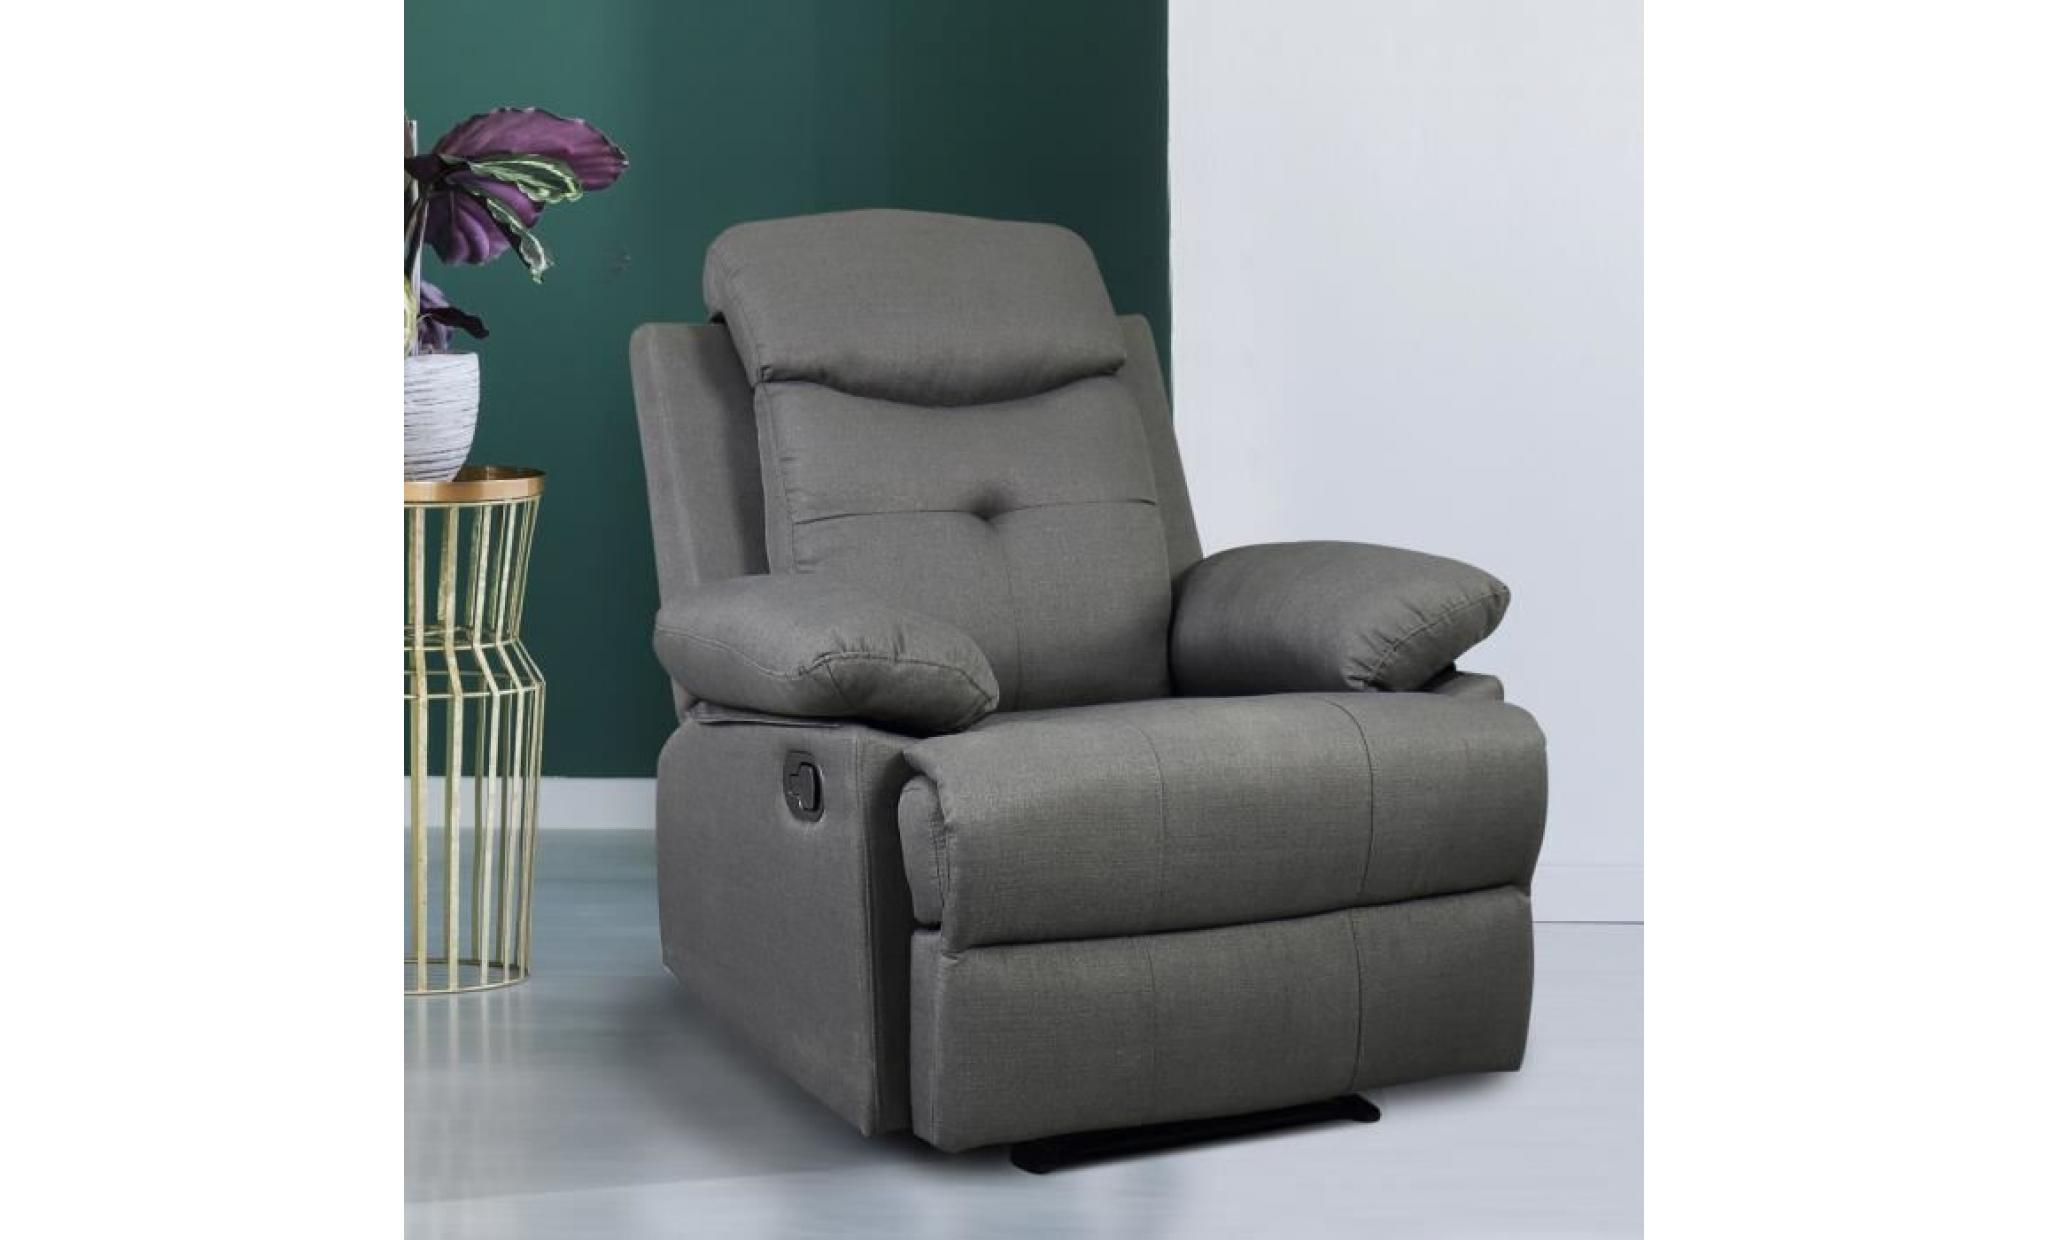 fauteuil de relaxation design contemporain dossier inclinable repose pied intégré ajustable revêtement tissu lin gris 84x95x97cm pas cher